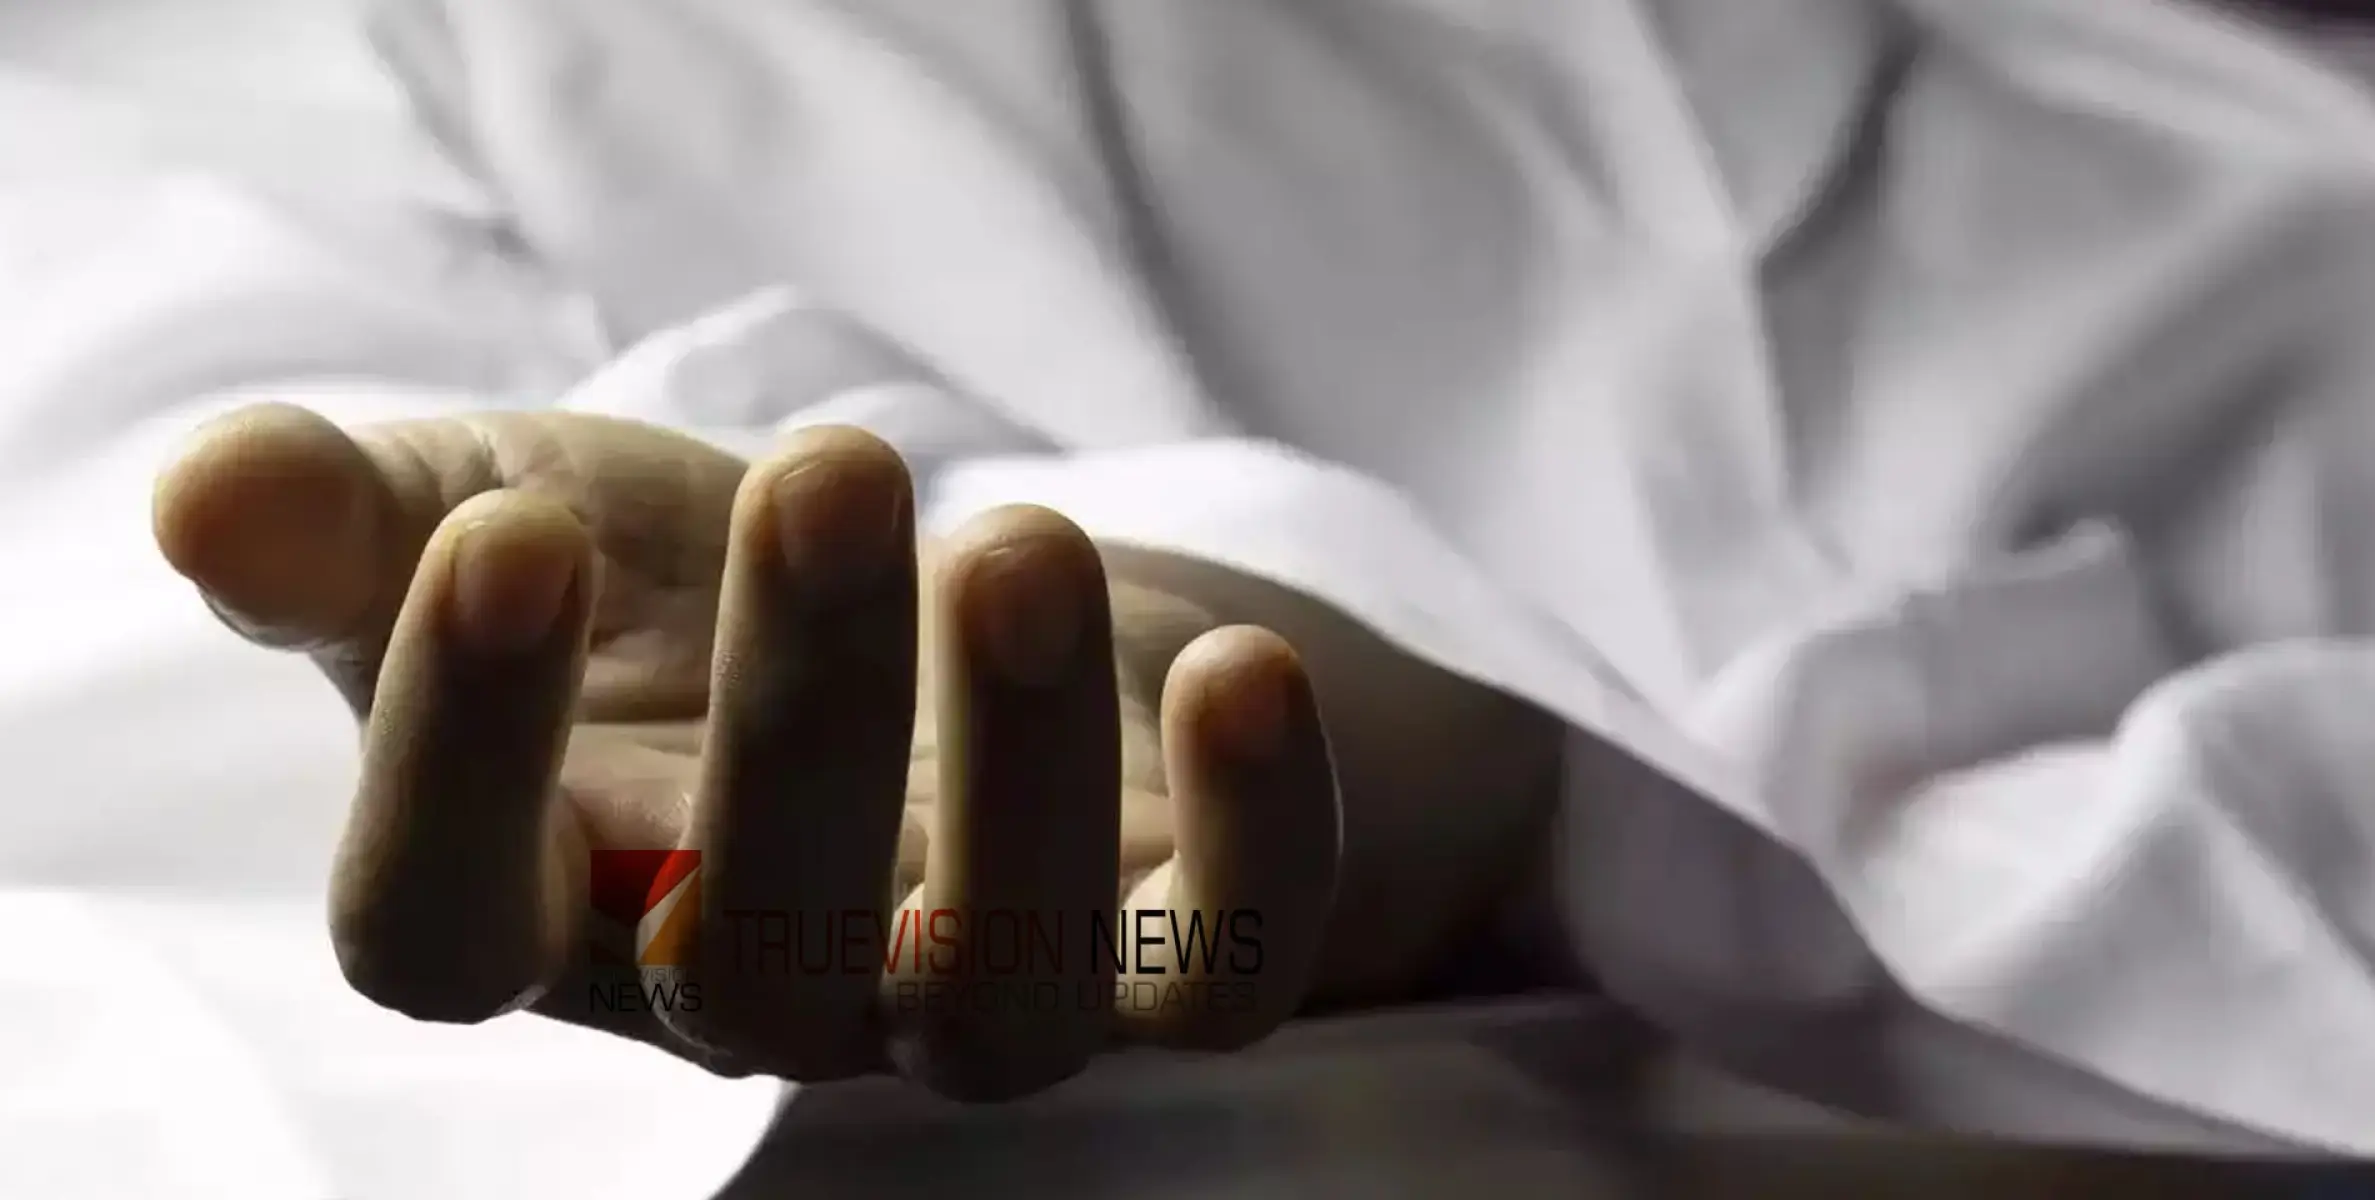 #DEATH | ഗർഭഛിദ്രം: ആരോപണ വിധേയനായ ഡോക്ടർ കാറിനുള്ളിൽ മരിച്ചനിലയിൽ 